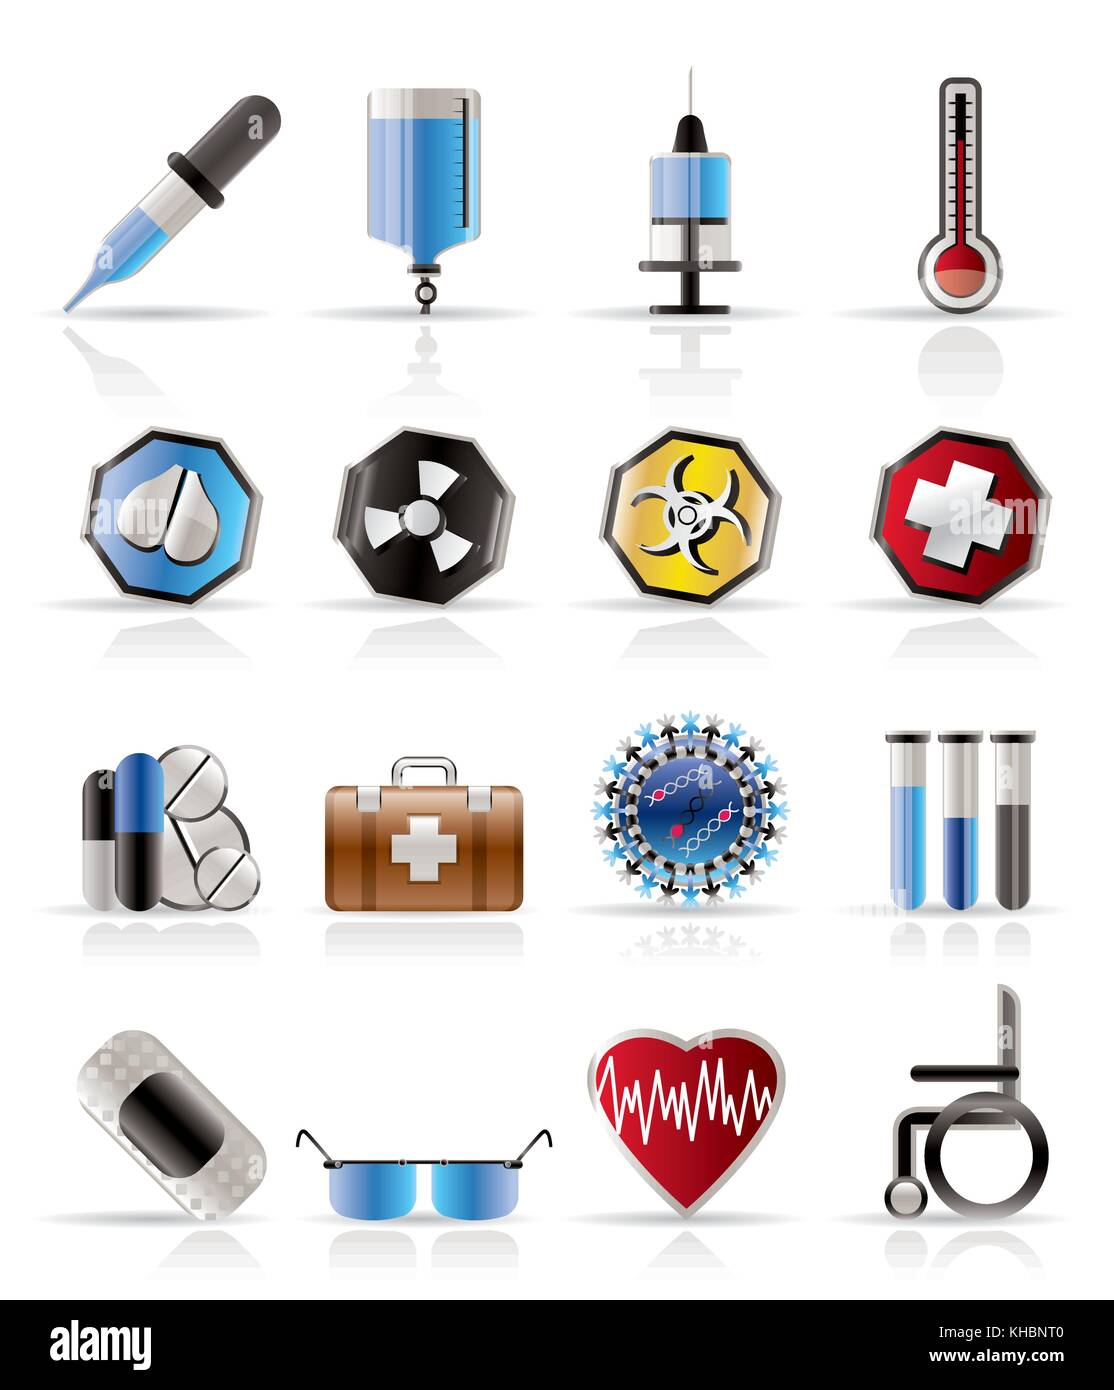 Realistische medizinische themed Symbole und Warnung - Zeichen - Vektor Icon Set Stock Vektor